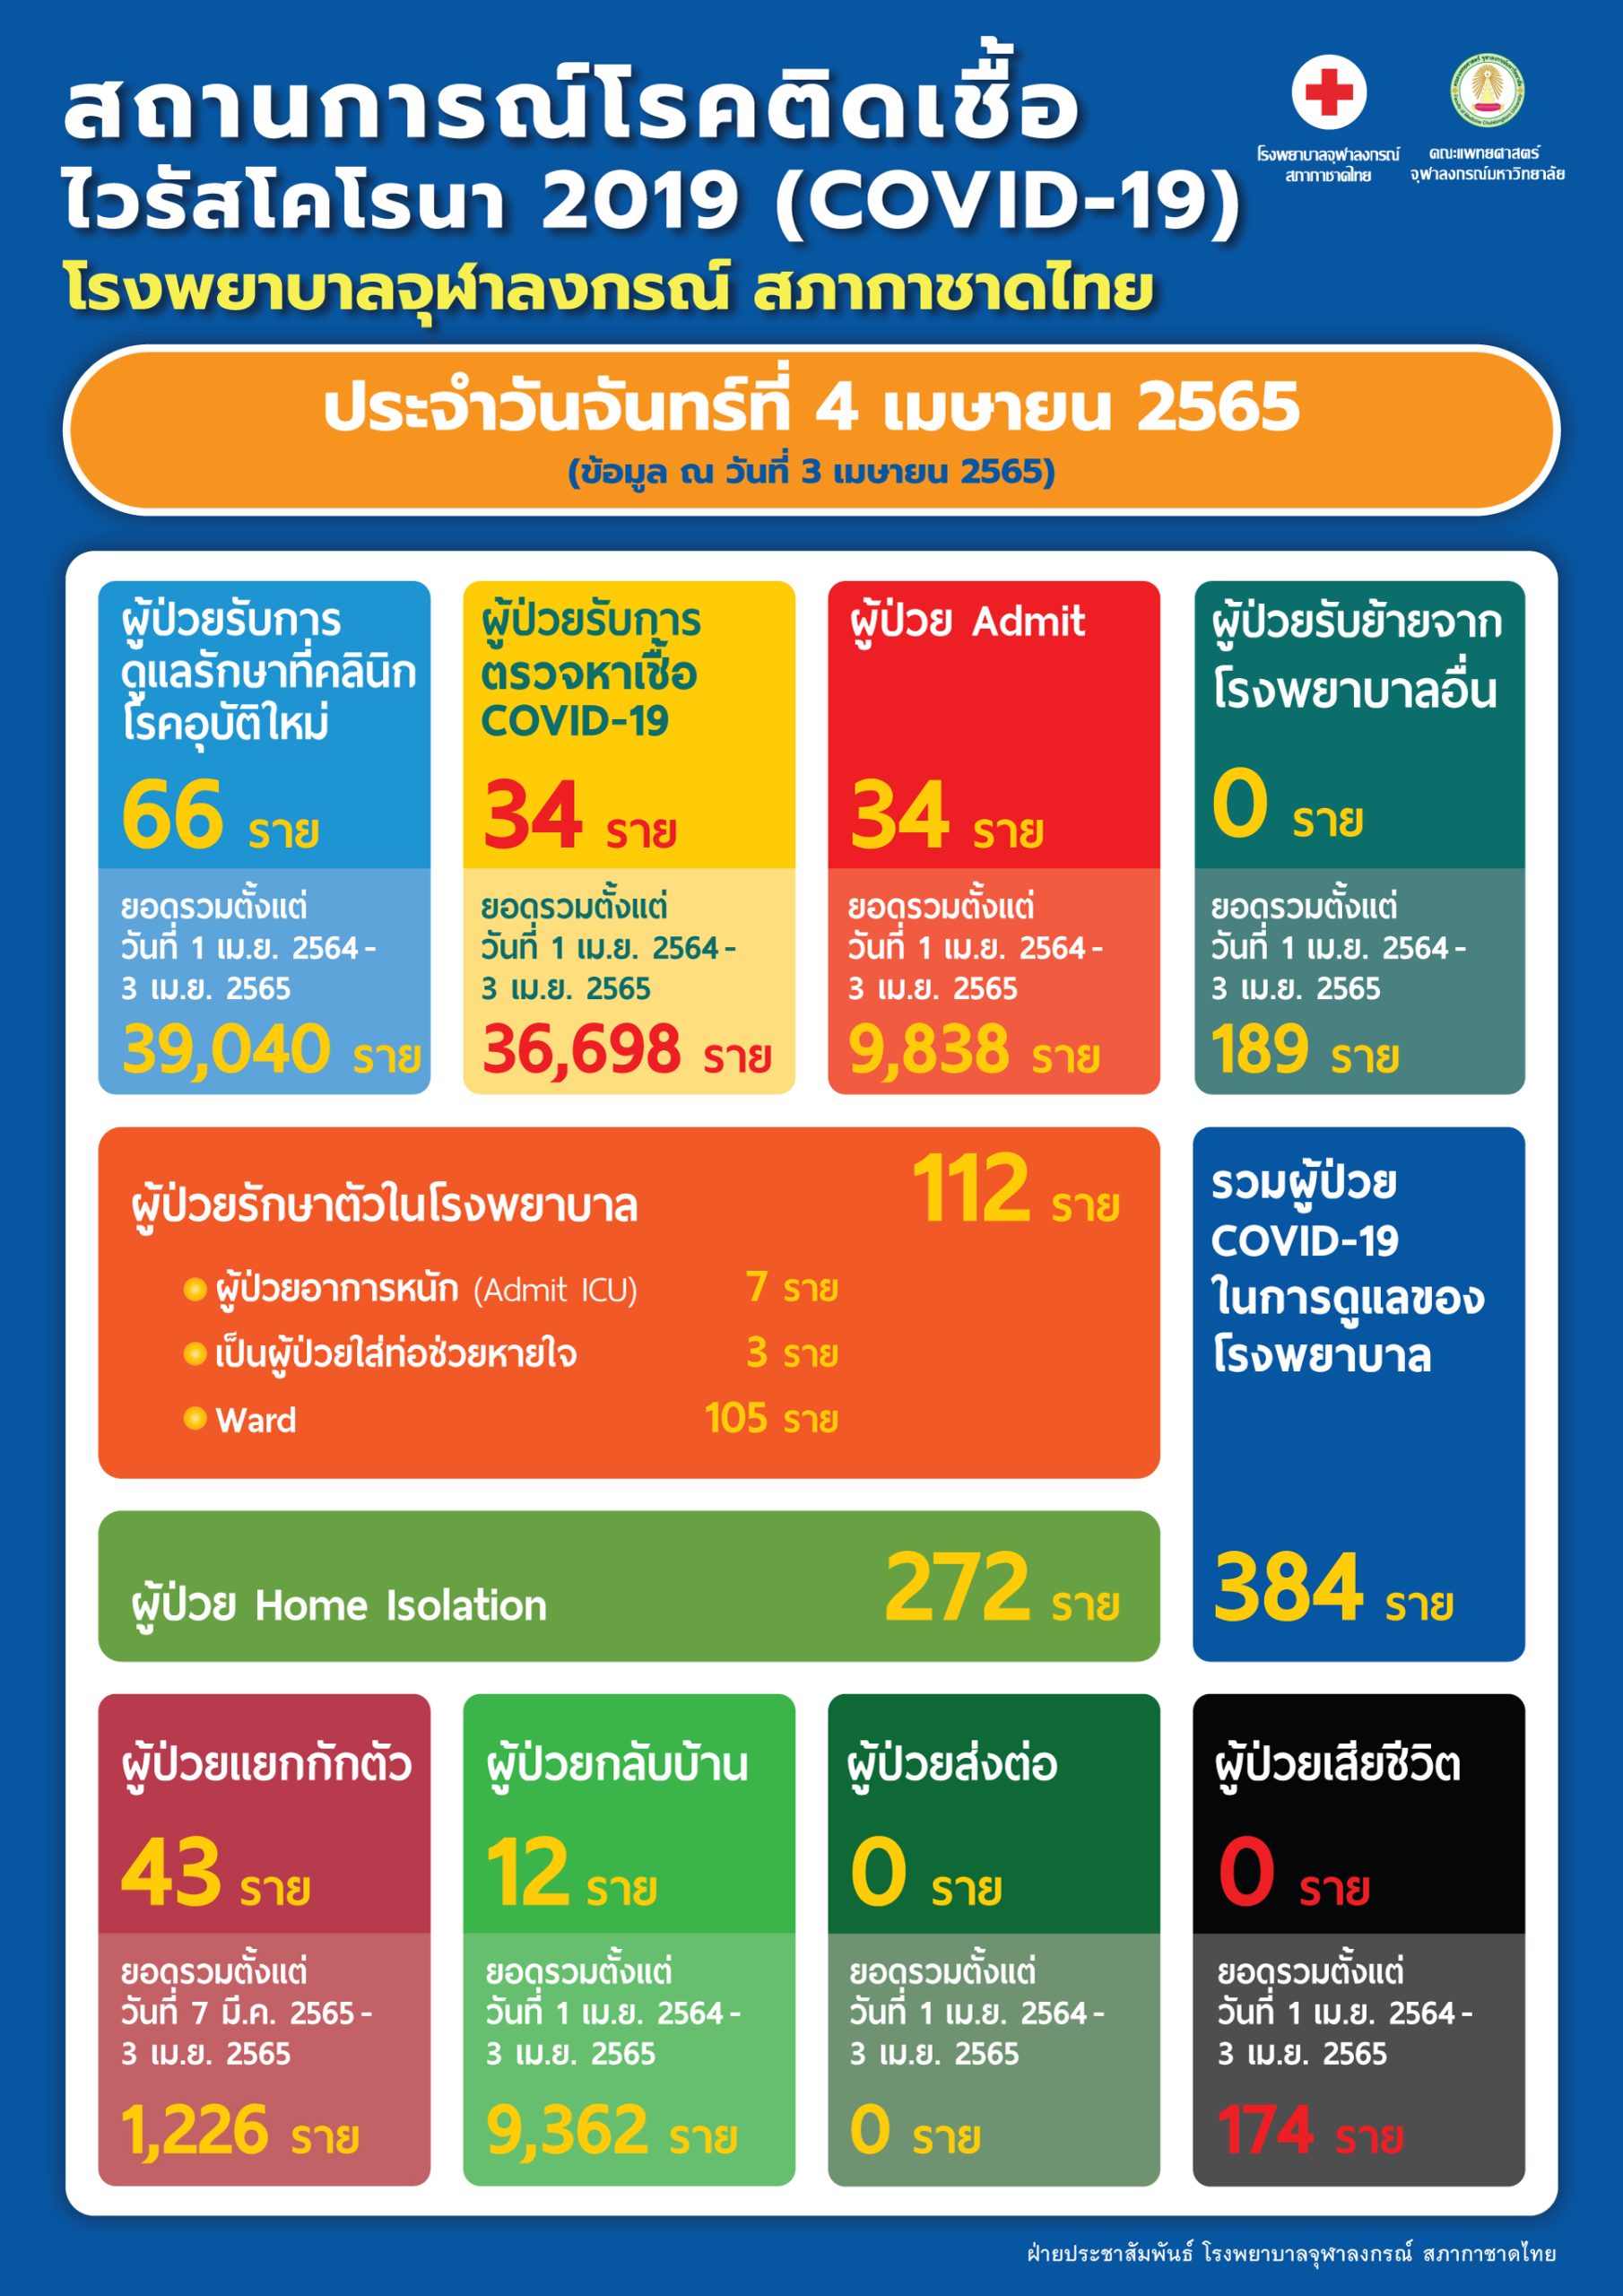 สถานการณ์โรคติดเชื้อไวรัสโคโรนา 2019 (COVID-19) โรงพยาบาลจุฬาลงกรณ์ สภากาชาดไทย ประจำวันจันทร์ที่ 4 เมษายน 2565